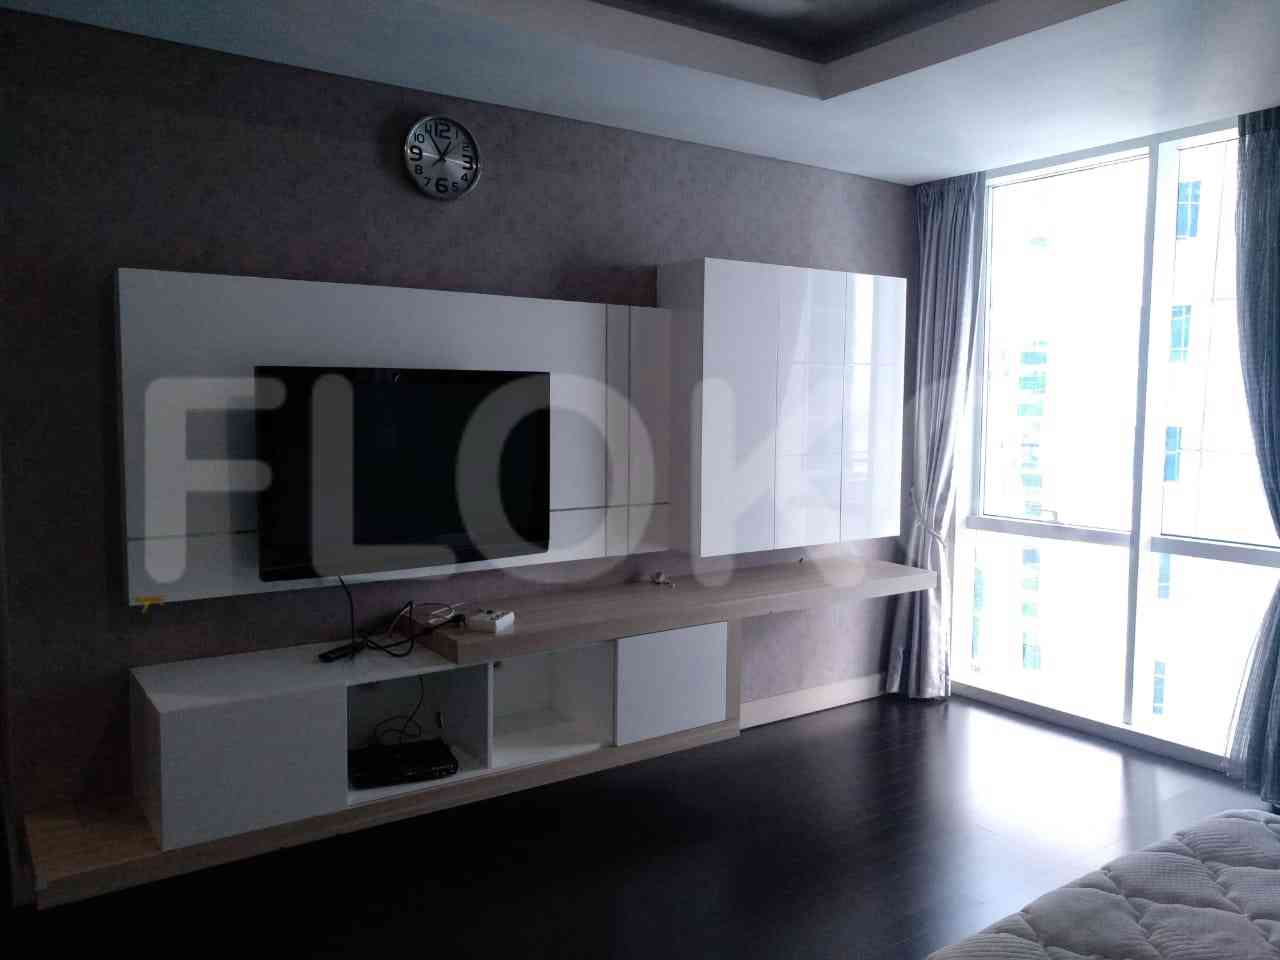 3 Bedroom on 15th Floor for Rent in Regatta - fpla99 5